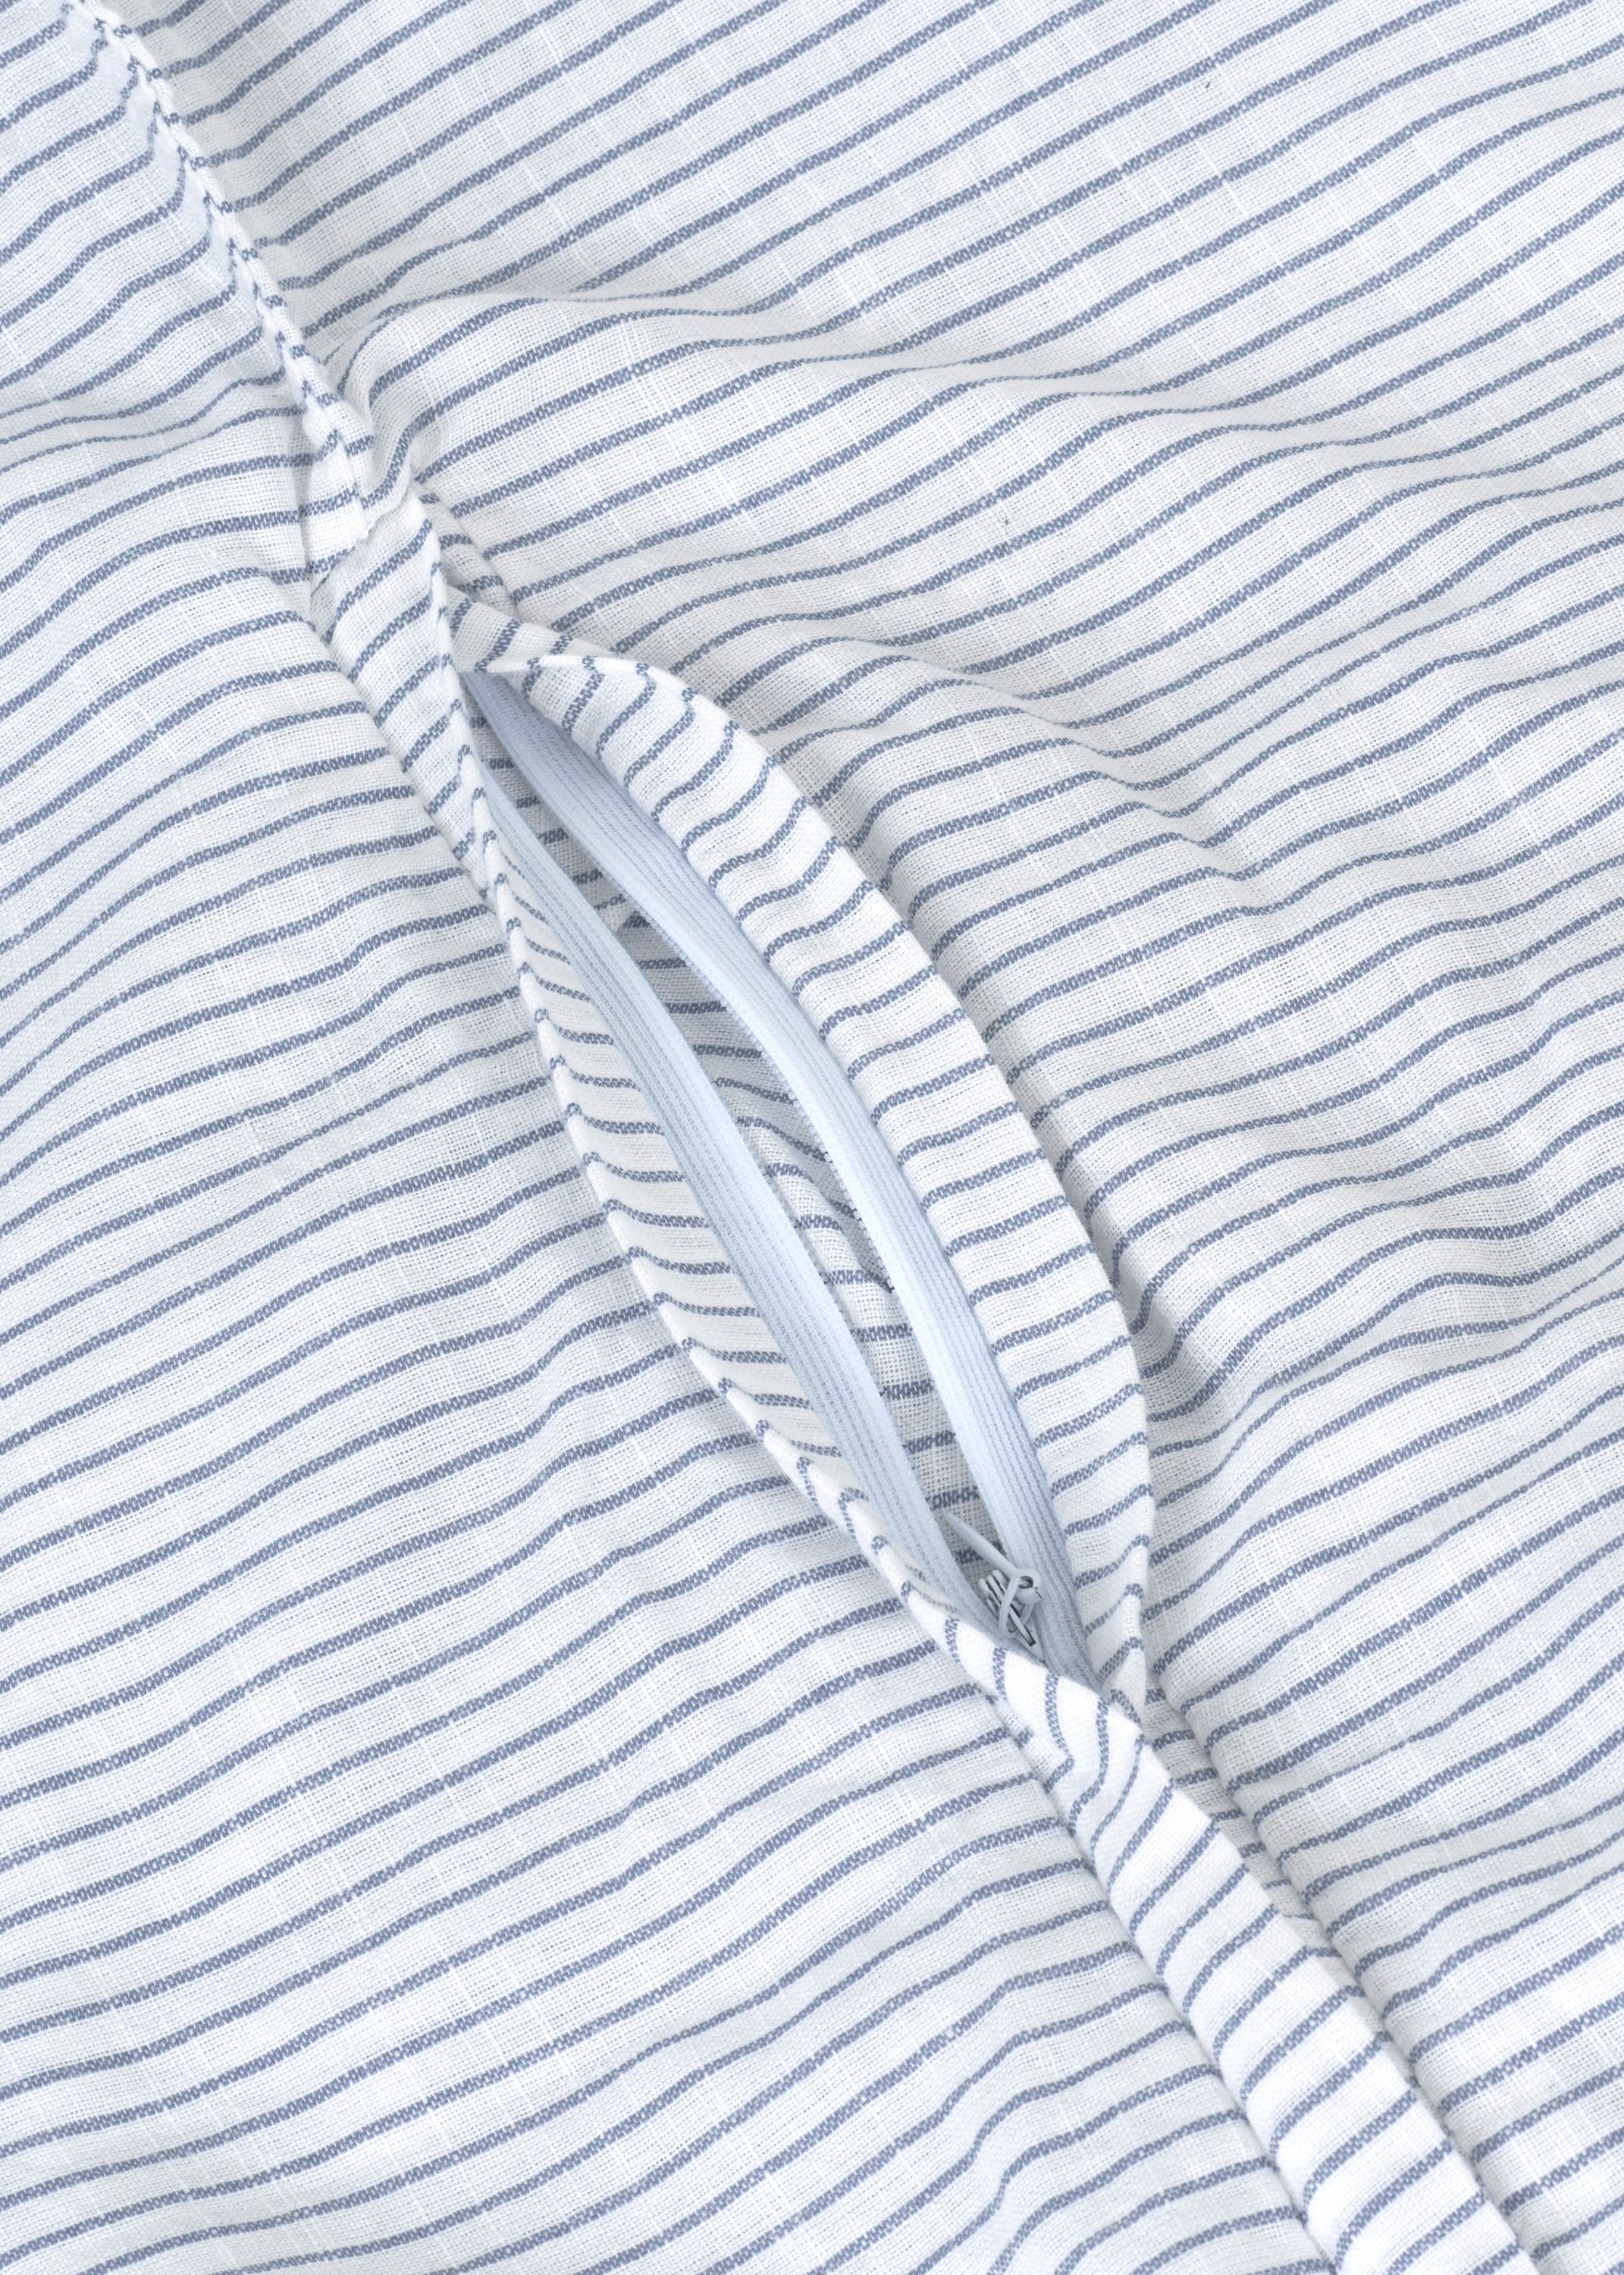 Sengetøj - Stribet sengetøj - dobbelt (200x220 + 2 pudebetræk)